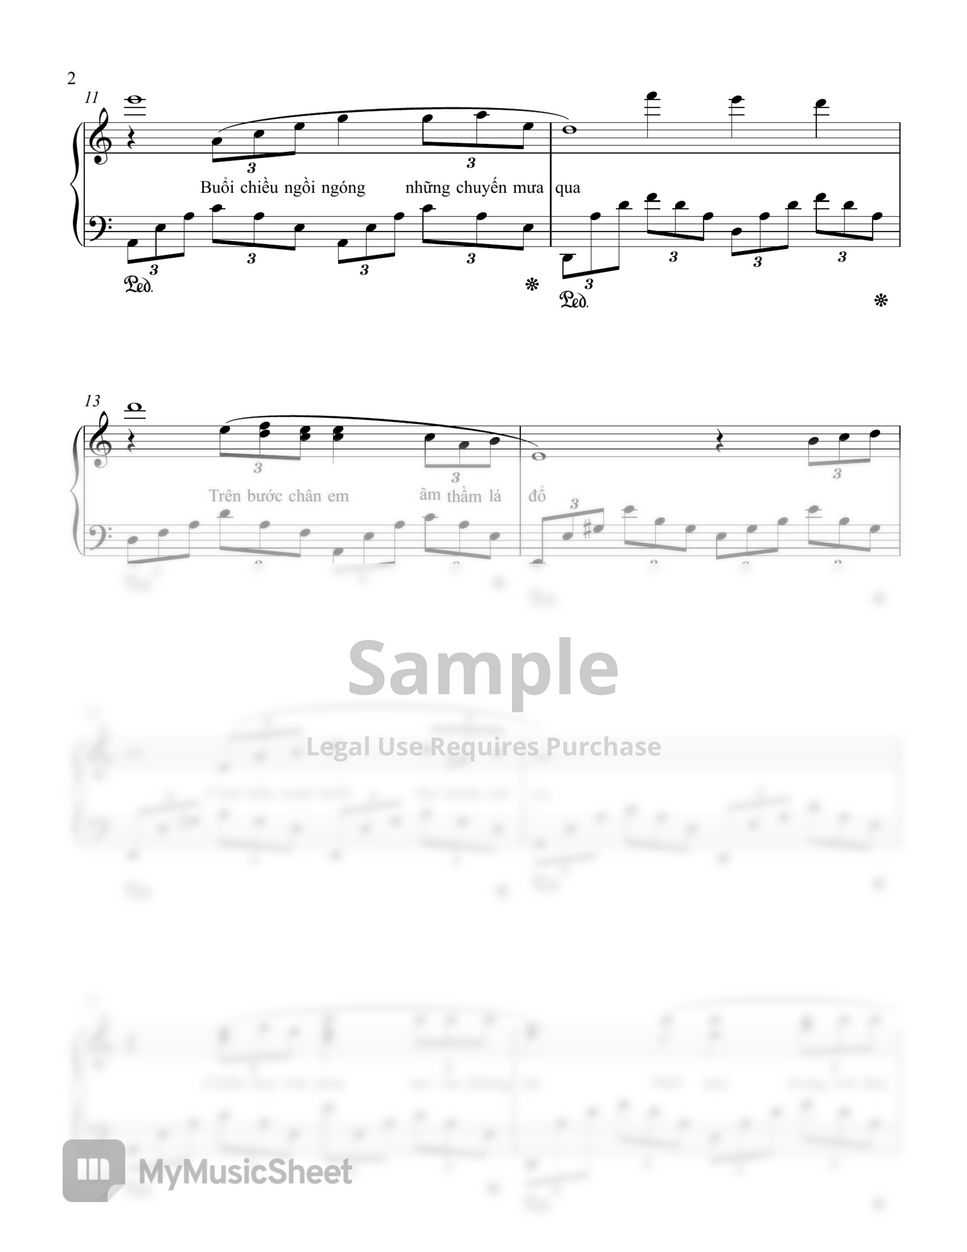 Diem Xua for Piano by Hai Mai